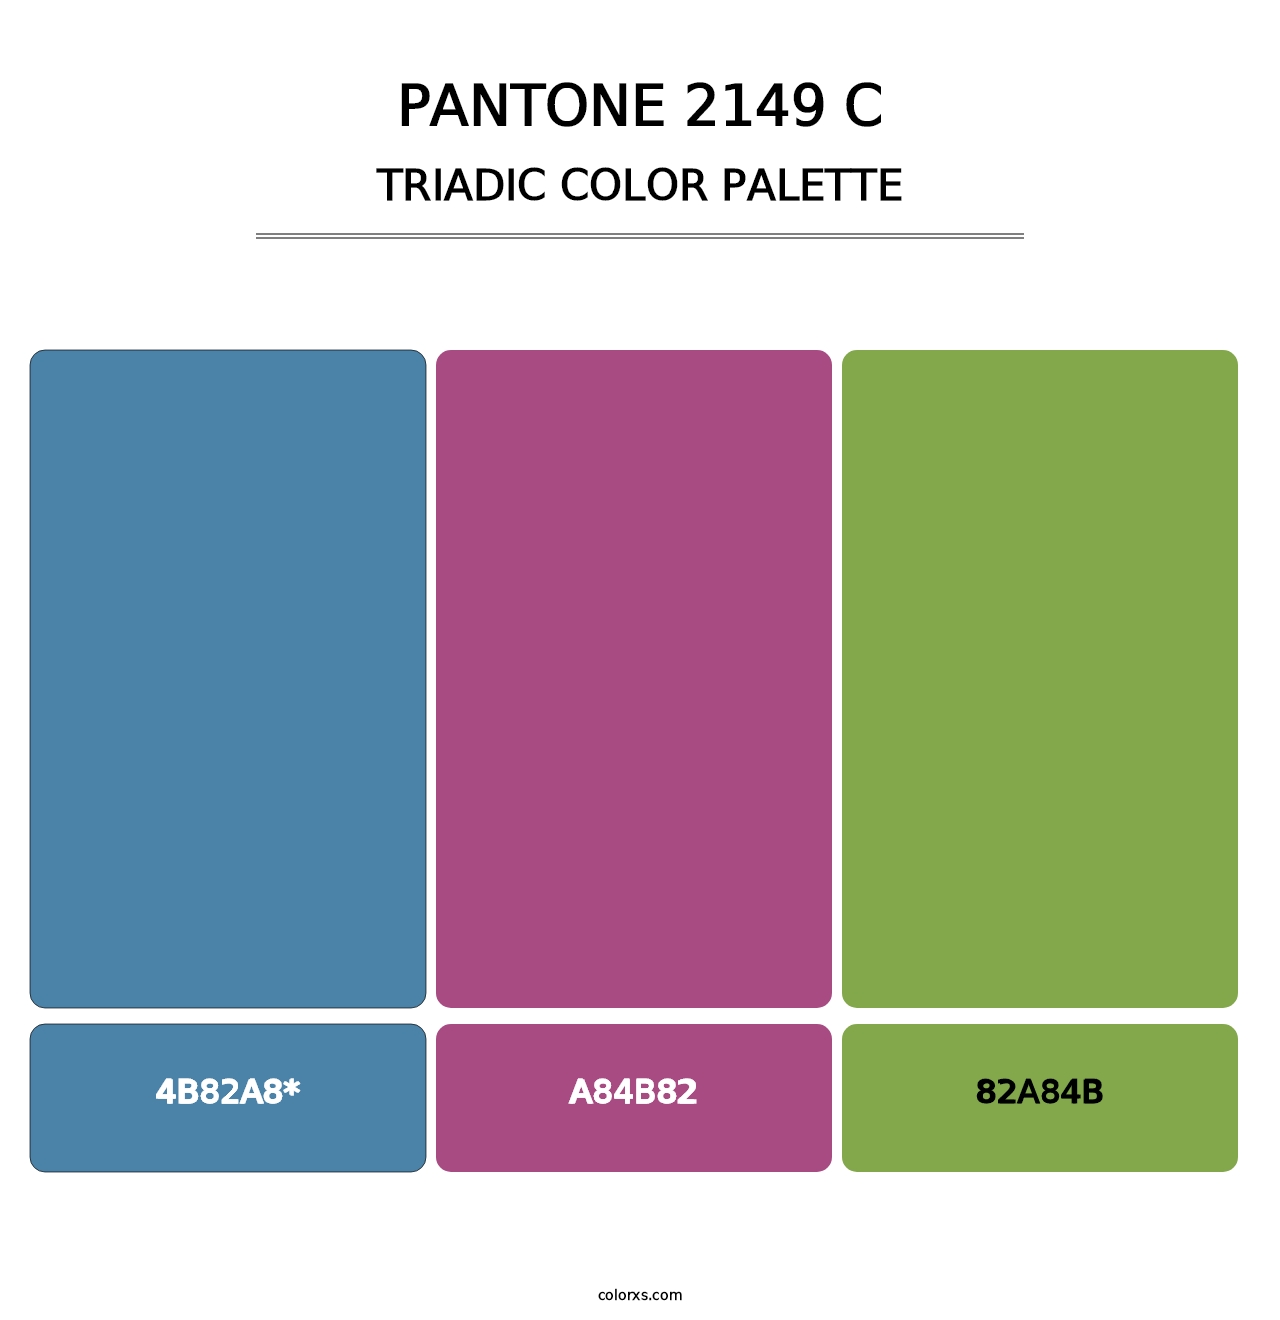 PANTONE 2149 C - Triadic Color Palette